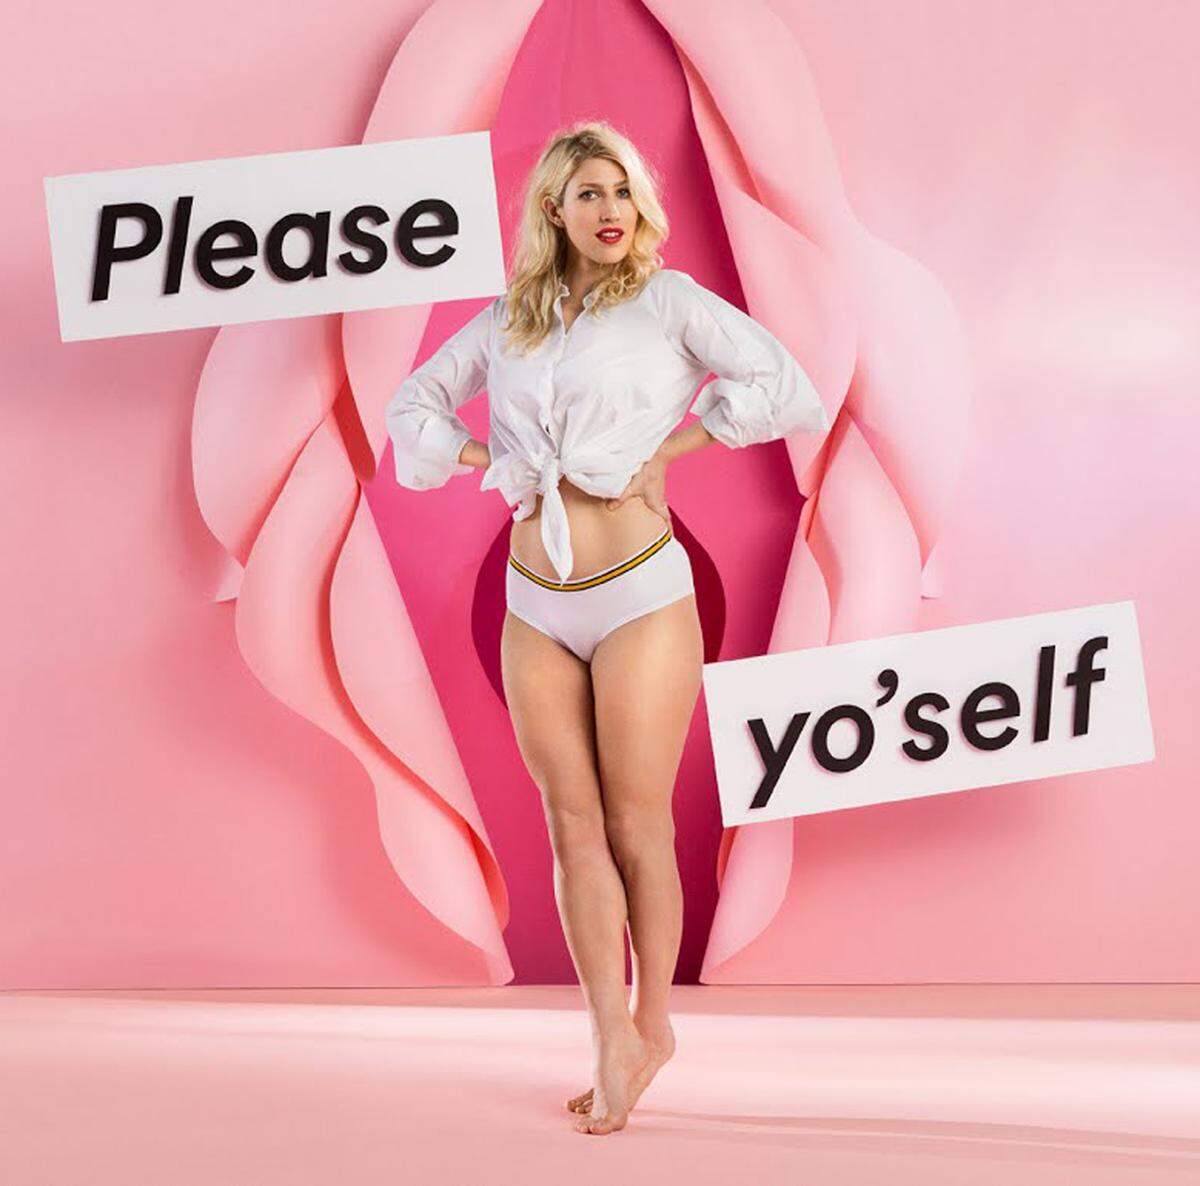 Feminismus und Mode gehören auch bei der schwedischen Textilkette Monki zusammen. Sex-Kolumnistin Karley Sciortino (Autorin des Blogs "Slutever") posiert da etwa unter dem Titel "Please yo'self".